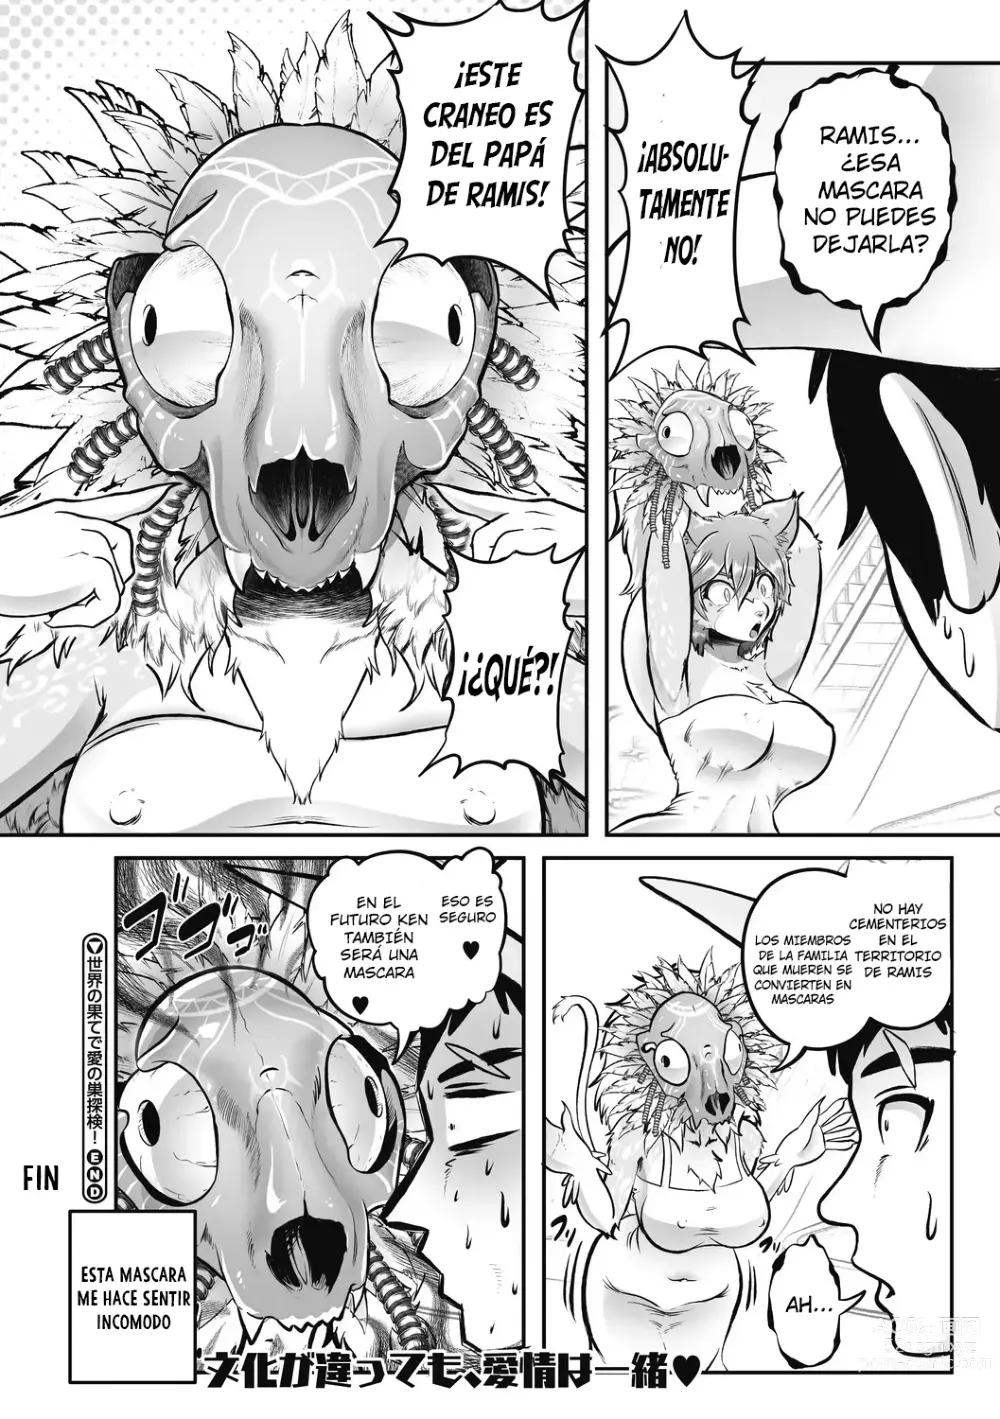 Page 36 of manga Sekai no Hate de Ai no Si Tanken!